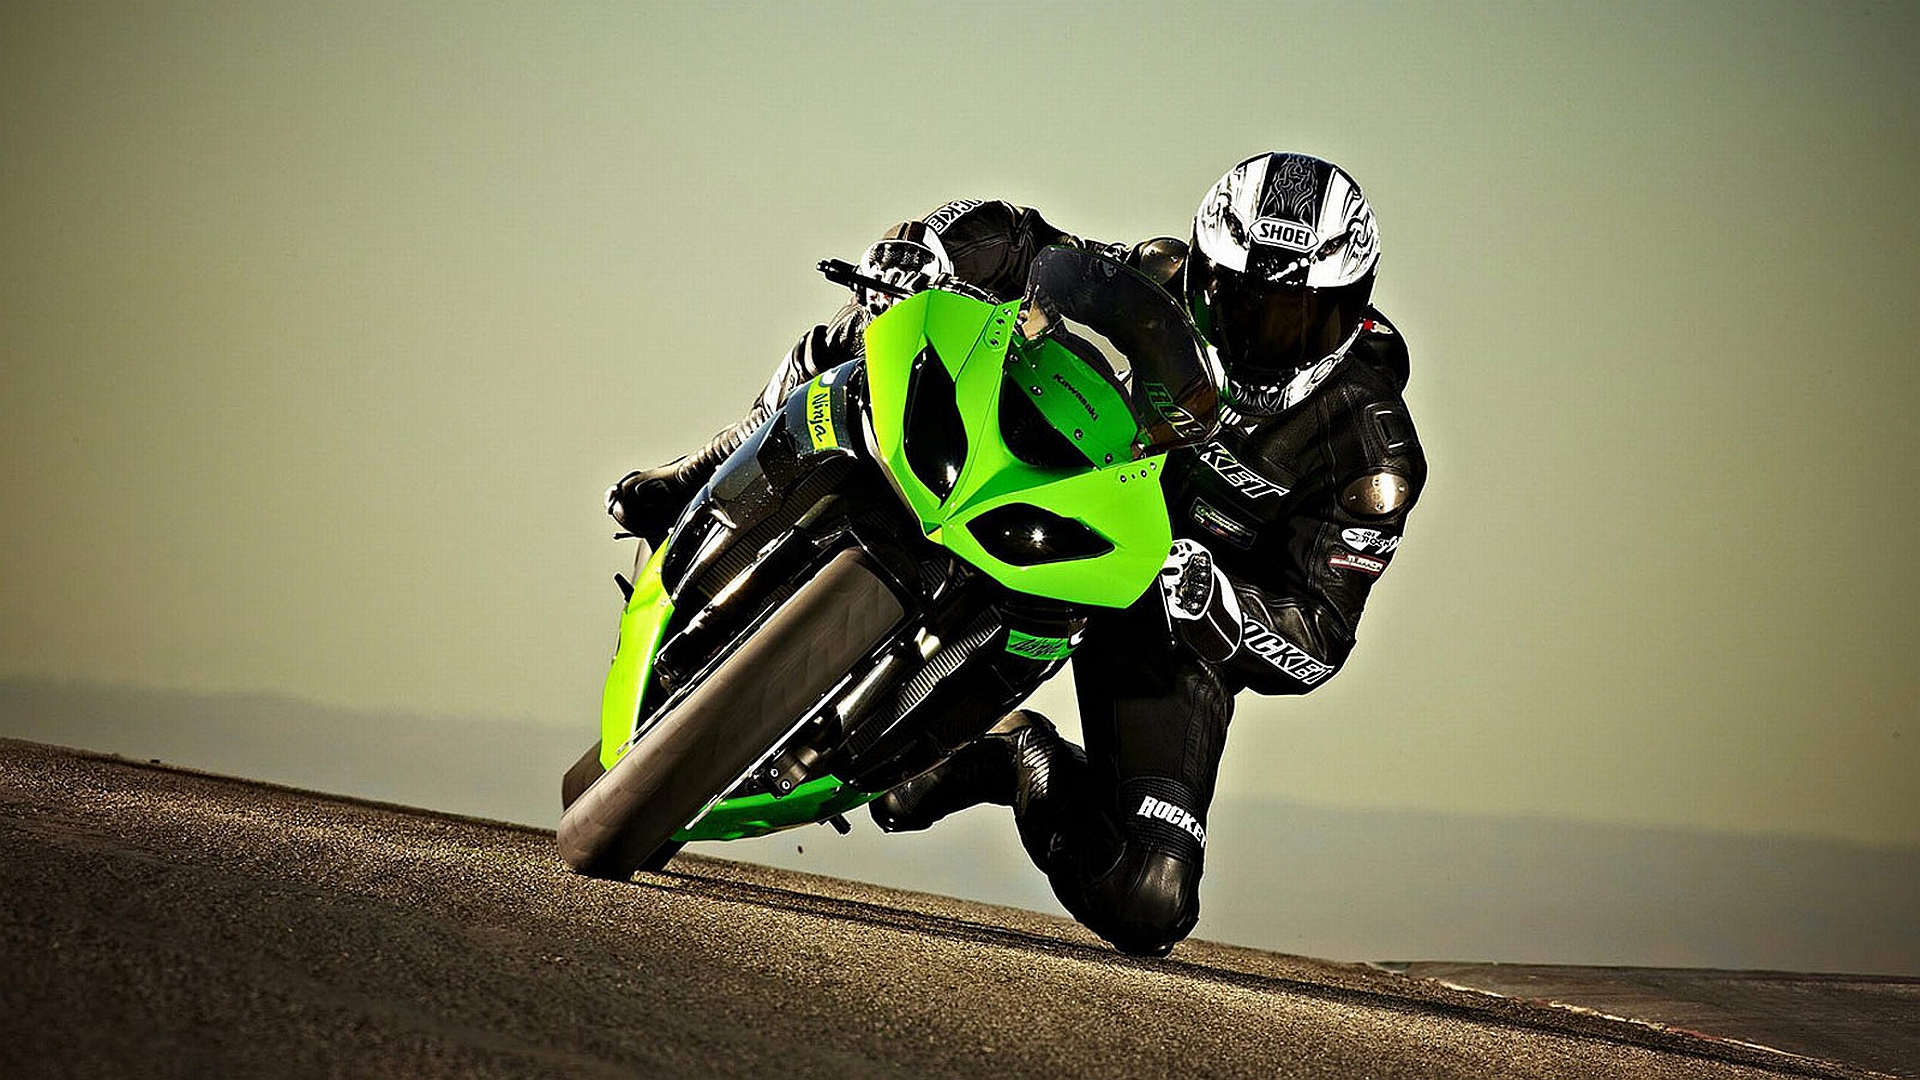 Motorrad Hintergrundbilder Hd - HD Wallpaper 